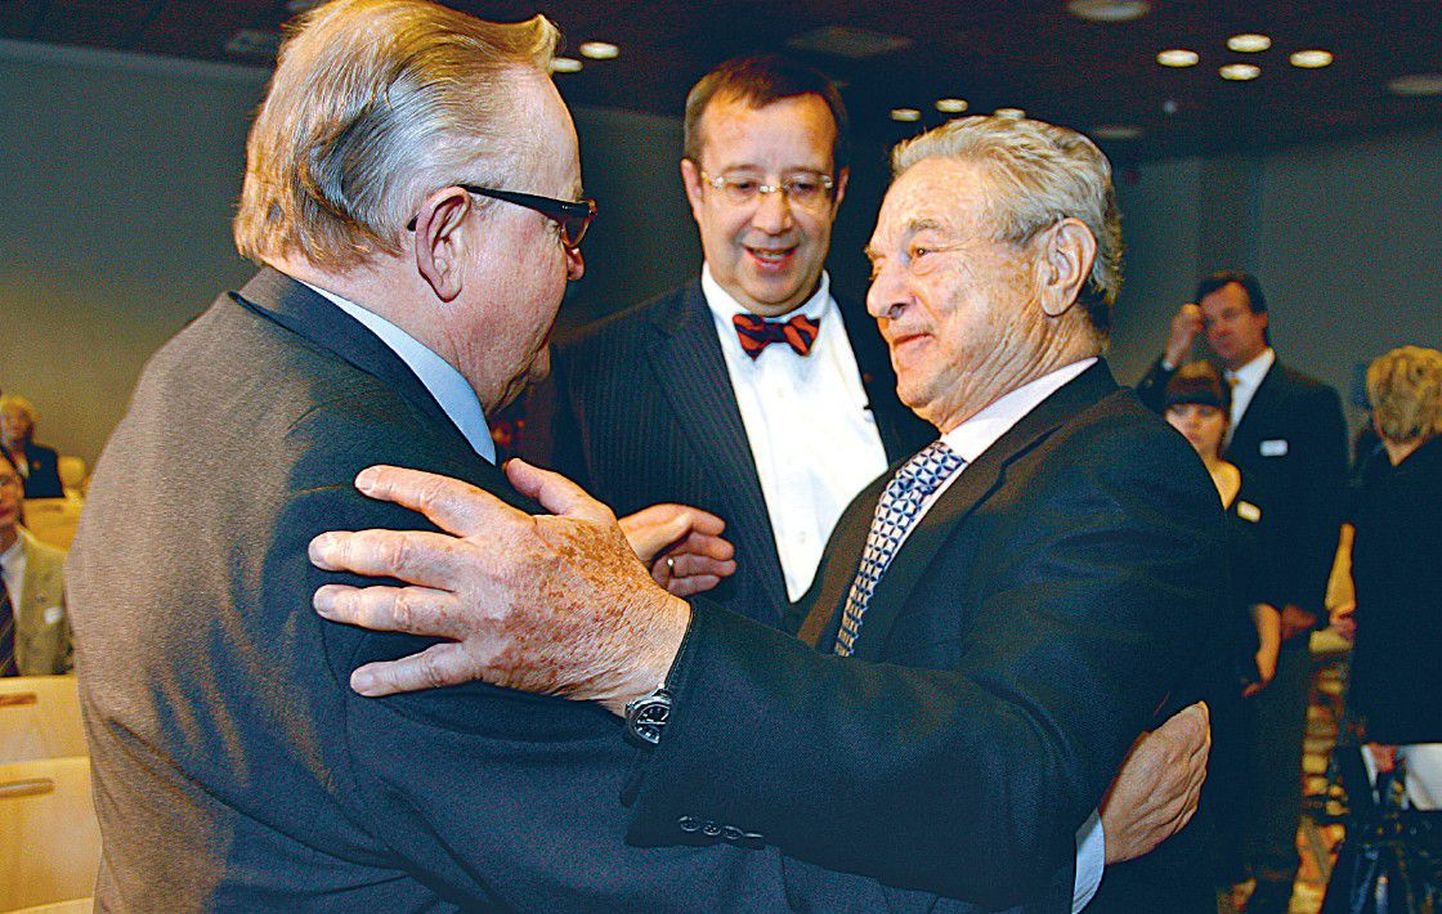 Külma sõja teema avatud ühiskonna foorumil tõi kaasa president Ilvese, Martti Ahtisaari ja George Sorose soojad embused.